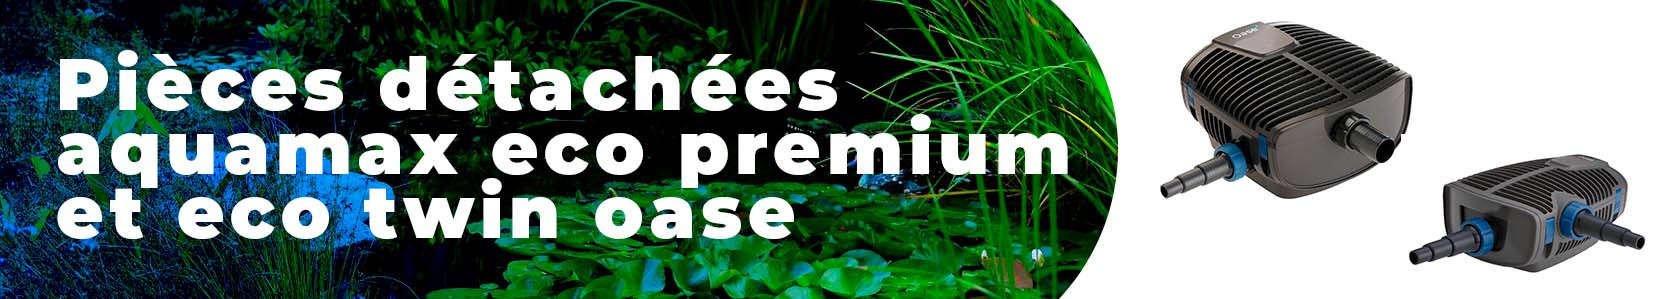 pièce détachée oase  pour aquamax  eco premium et eco  twin oase